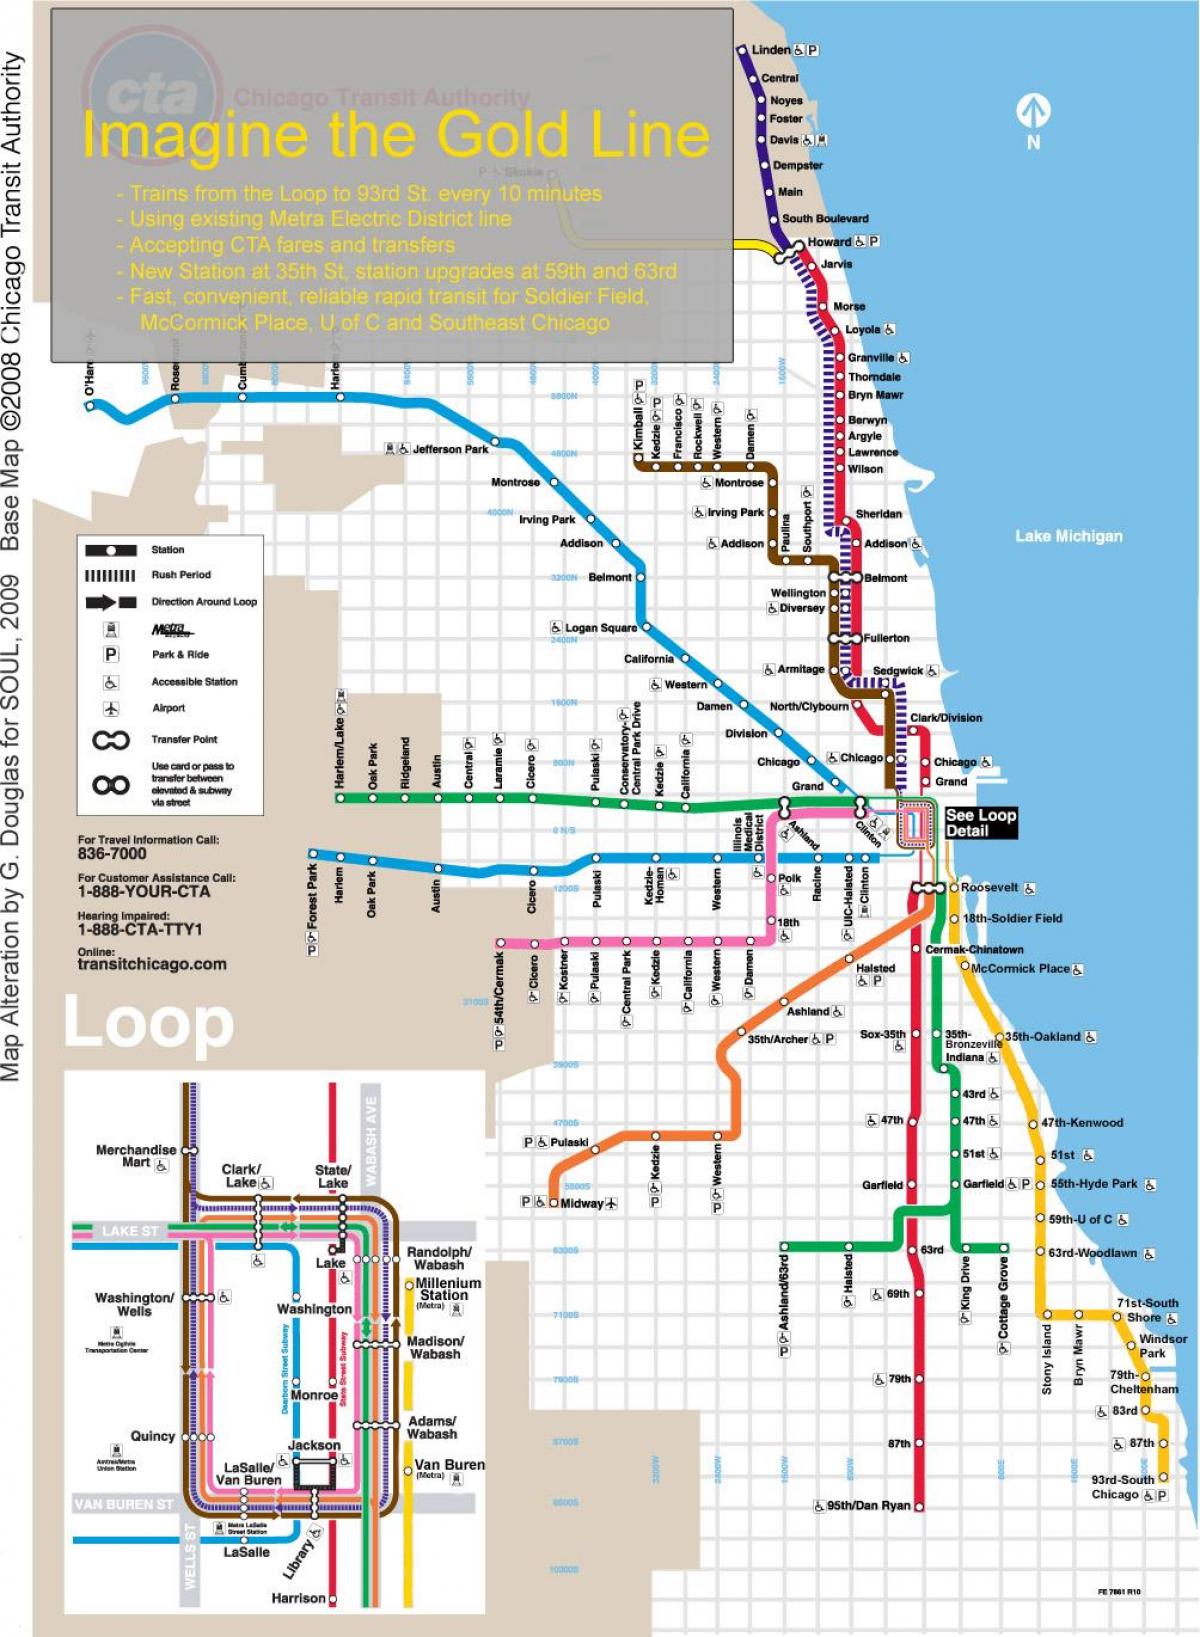 Чикаго возу на мапи плава линија